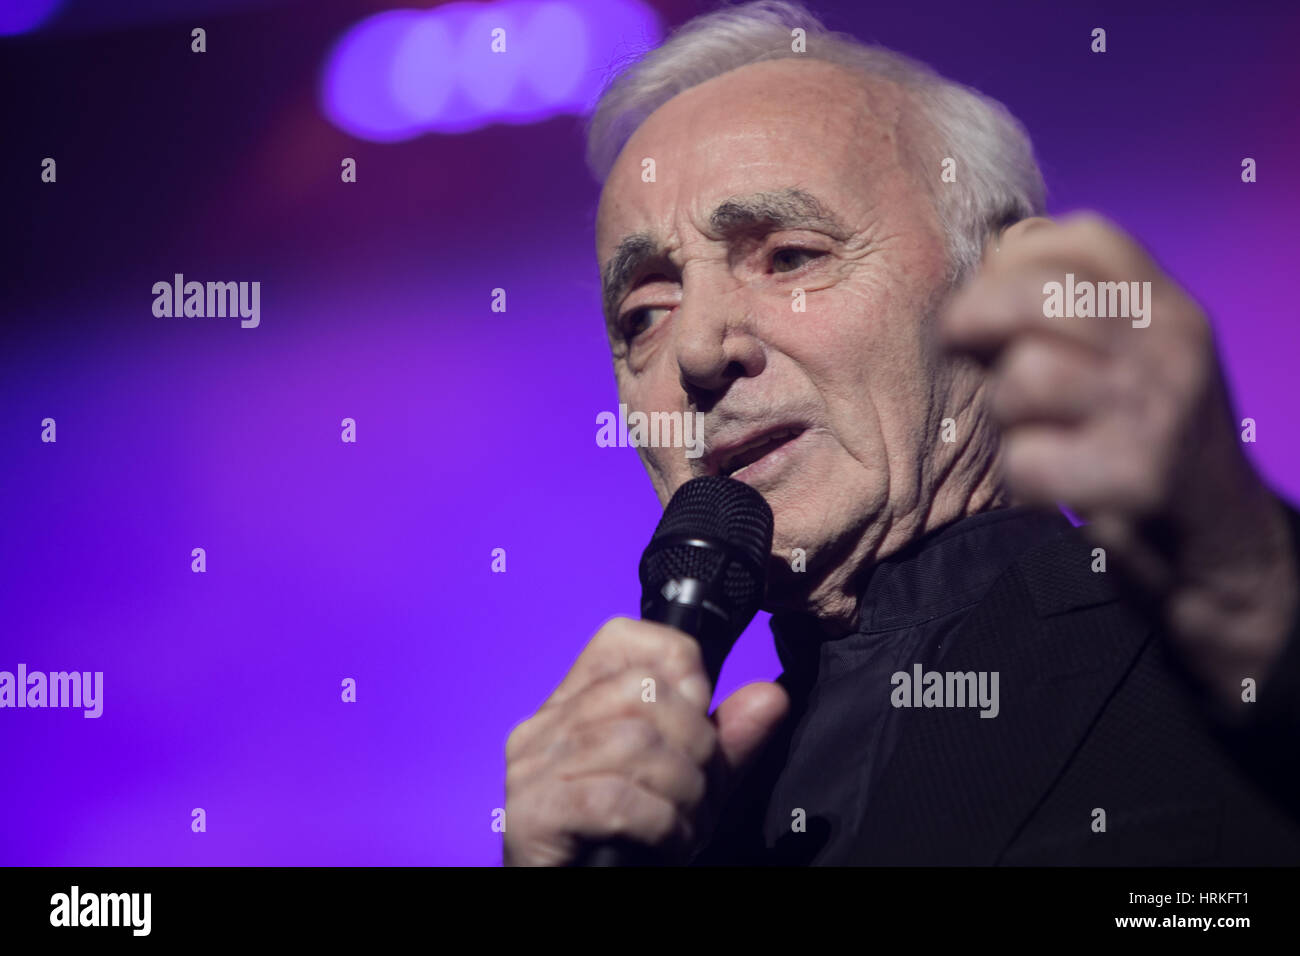 Les concerts du chanteur français Charles Aznavour à l'arène d'OPE, Lisbonne, Portugal. Banque D'Images